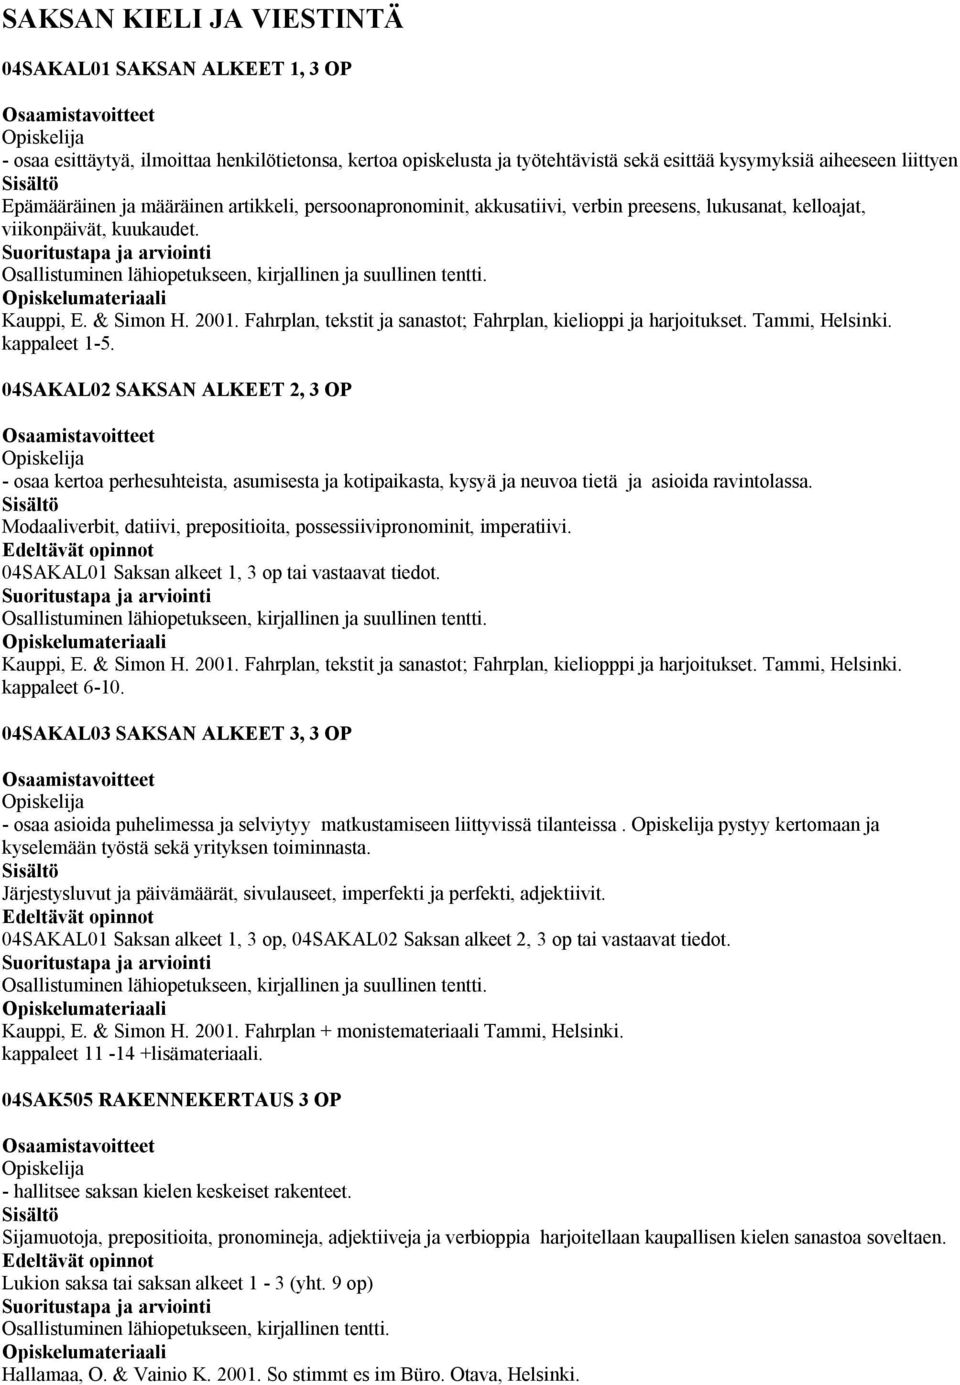 & Simon H. 2001. Fahrplan, tekstit ja sanastot; Fahrplan, kielioppi ja harjoitukset. Tammi, Helsinki. kappaleet 1-5.